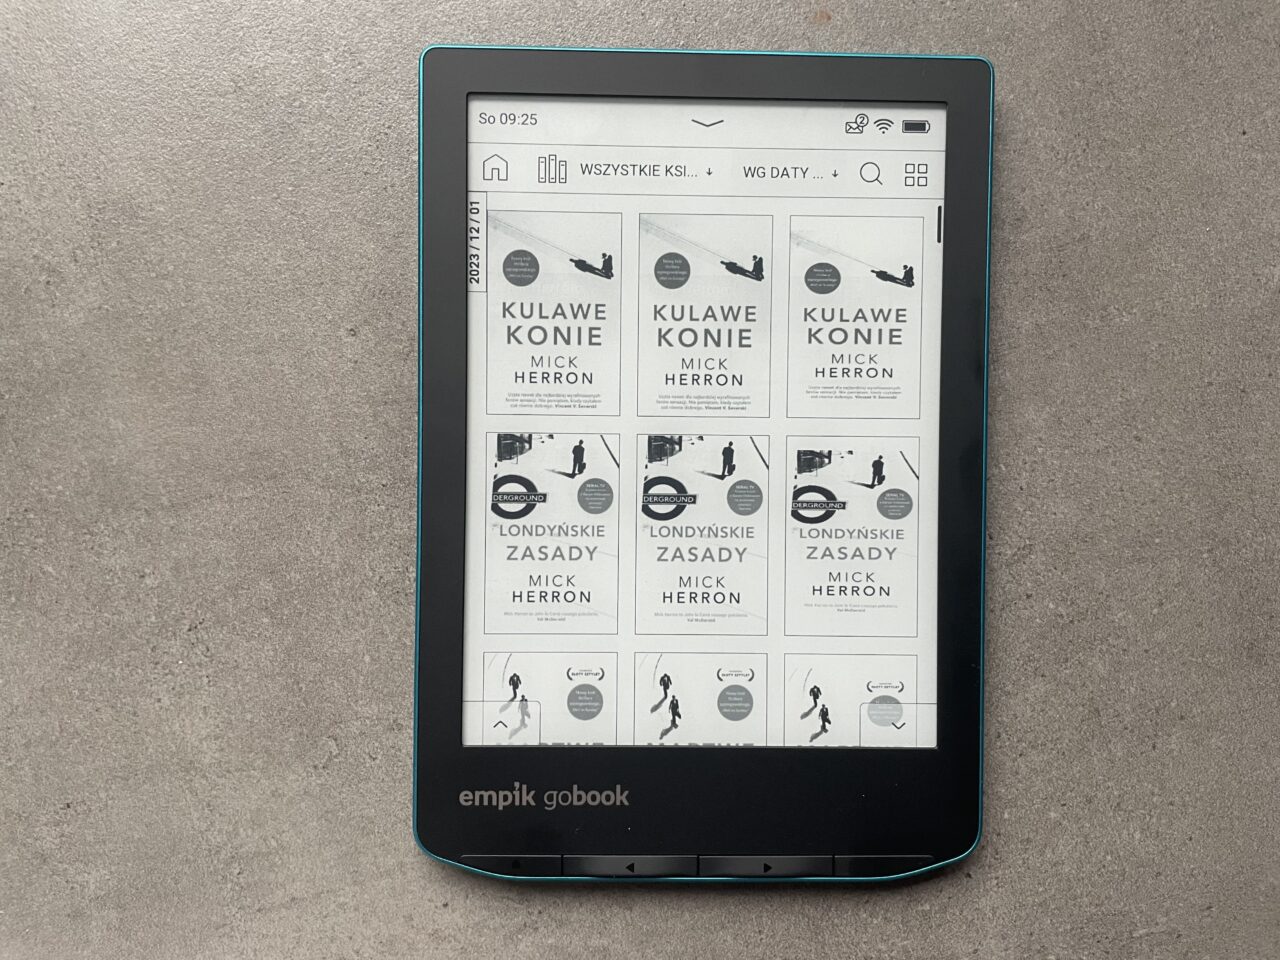 Czytnik e-booków leżący na szarym tle, wyświetlający bibliotekę książek elektronicznych z okładkami autorstwa Micka Herrona, w tym powtórzenia "Kulawe konie" i "Londyńskie zasady". Czytnik ma zaznaczoną ramkę w kolorze turkusowym i logo "empik goBook" na dole.